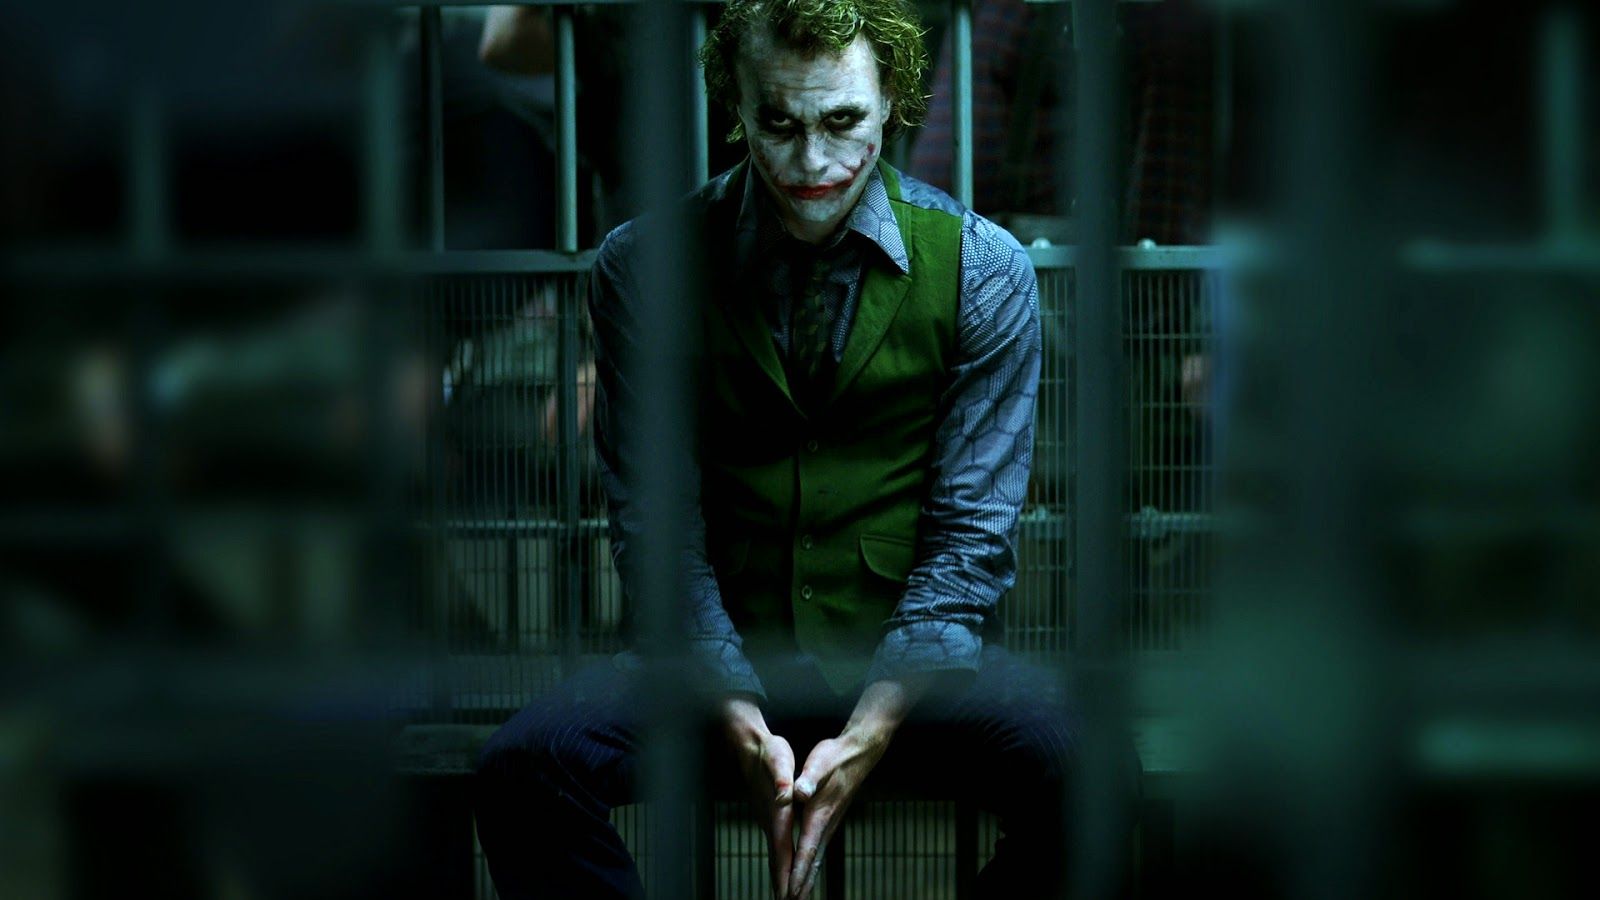 Website Wallpaper: The Joker - The Dark Knight Wallpaper